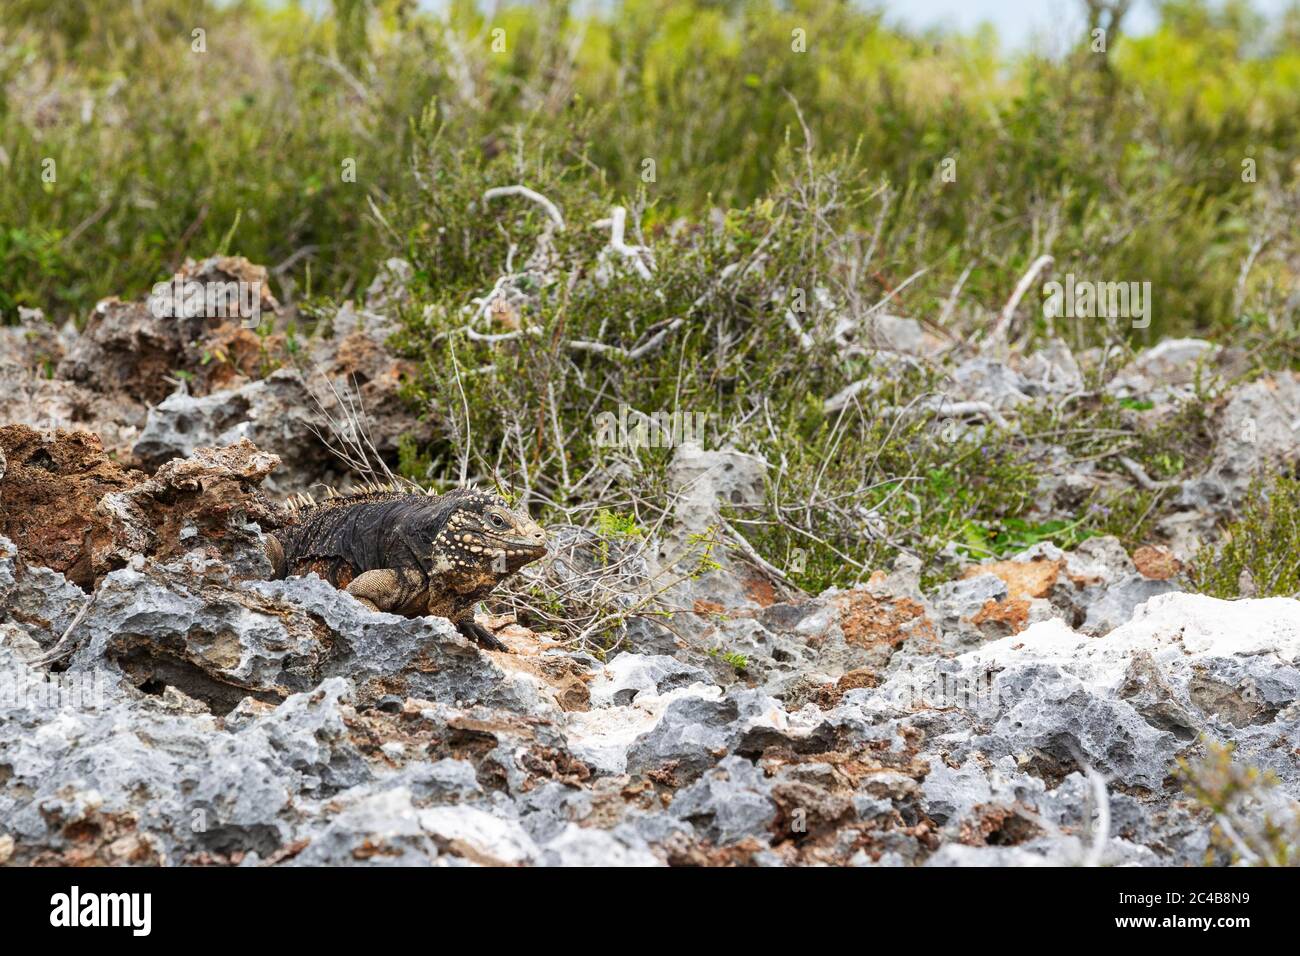 Iguana de roca cubana (Cyclura nubila nubila), macho, Península de Guanahacabibes, Parque Nacional de Guanahacabibes, Cuba Foto de stock